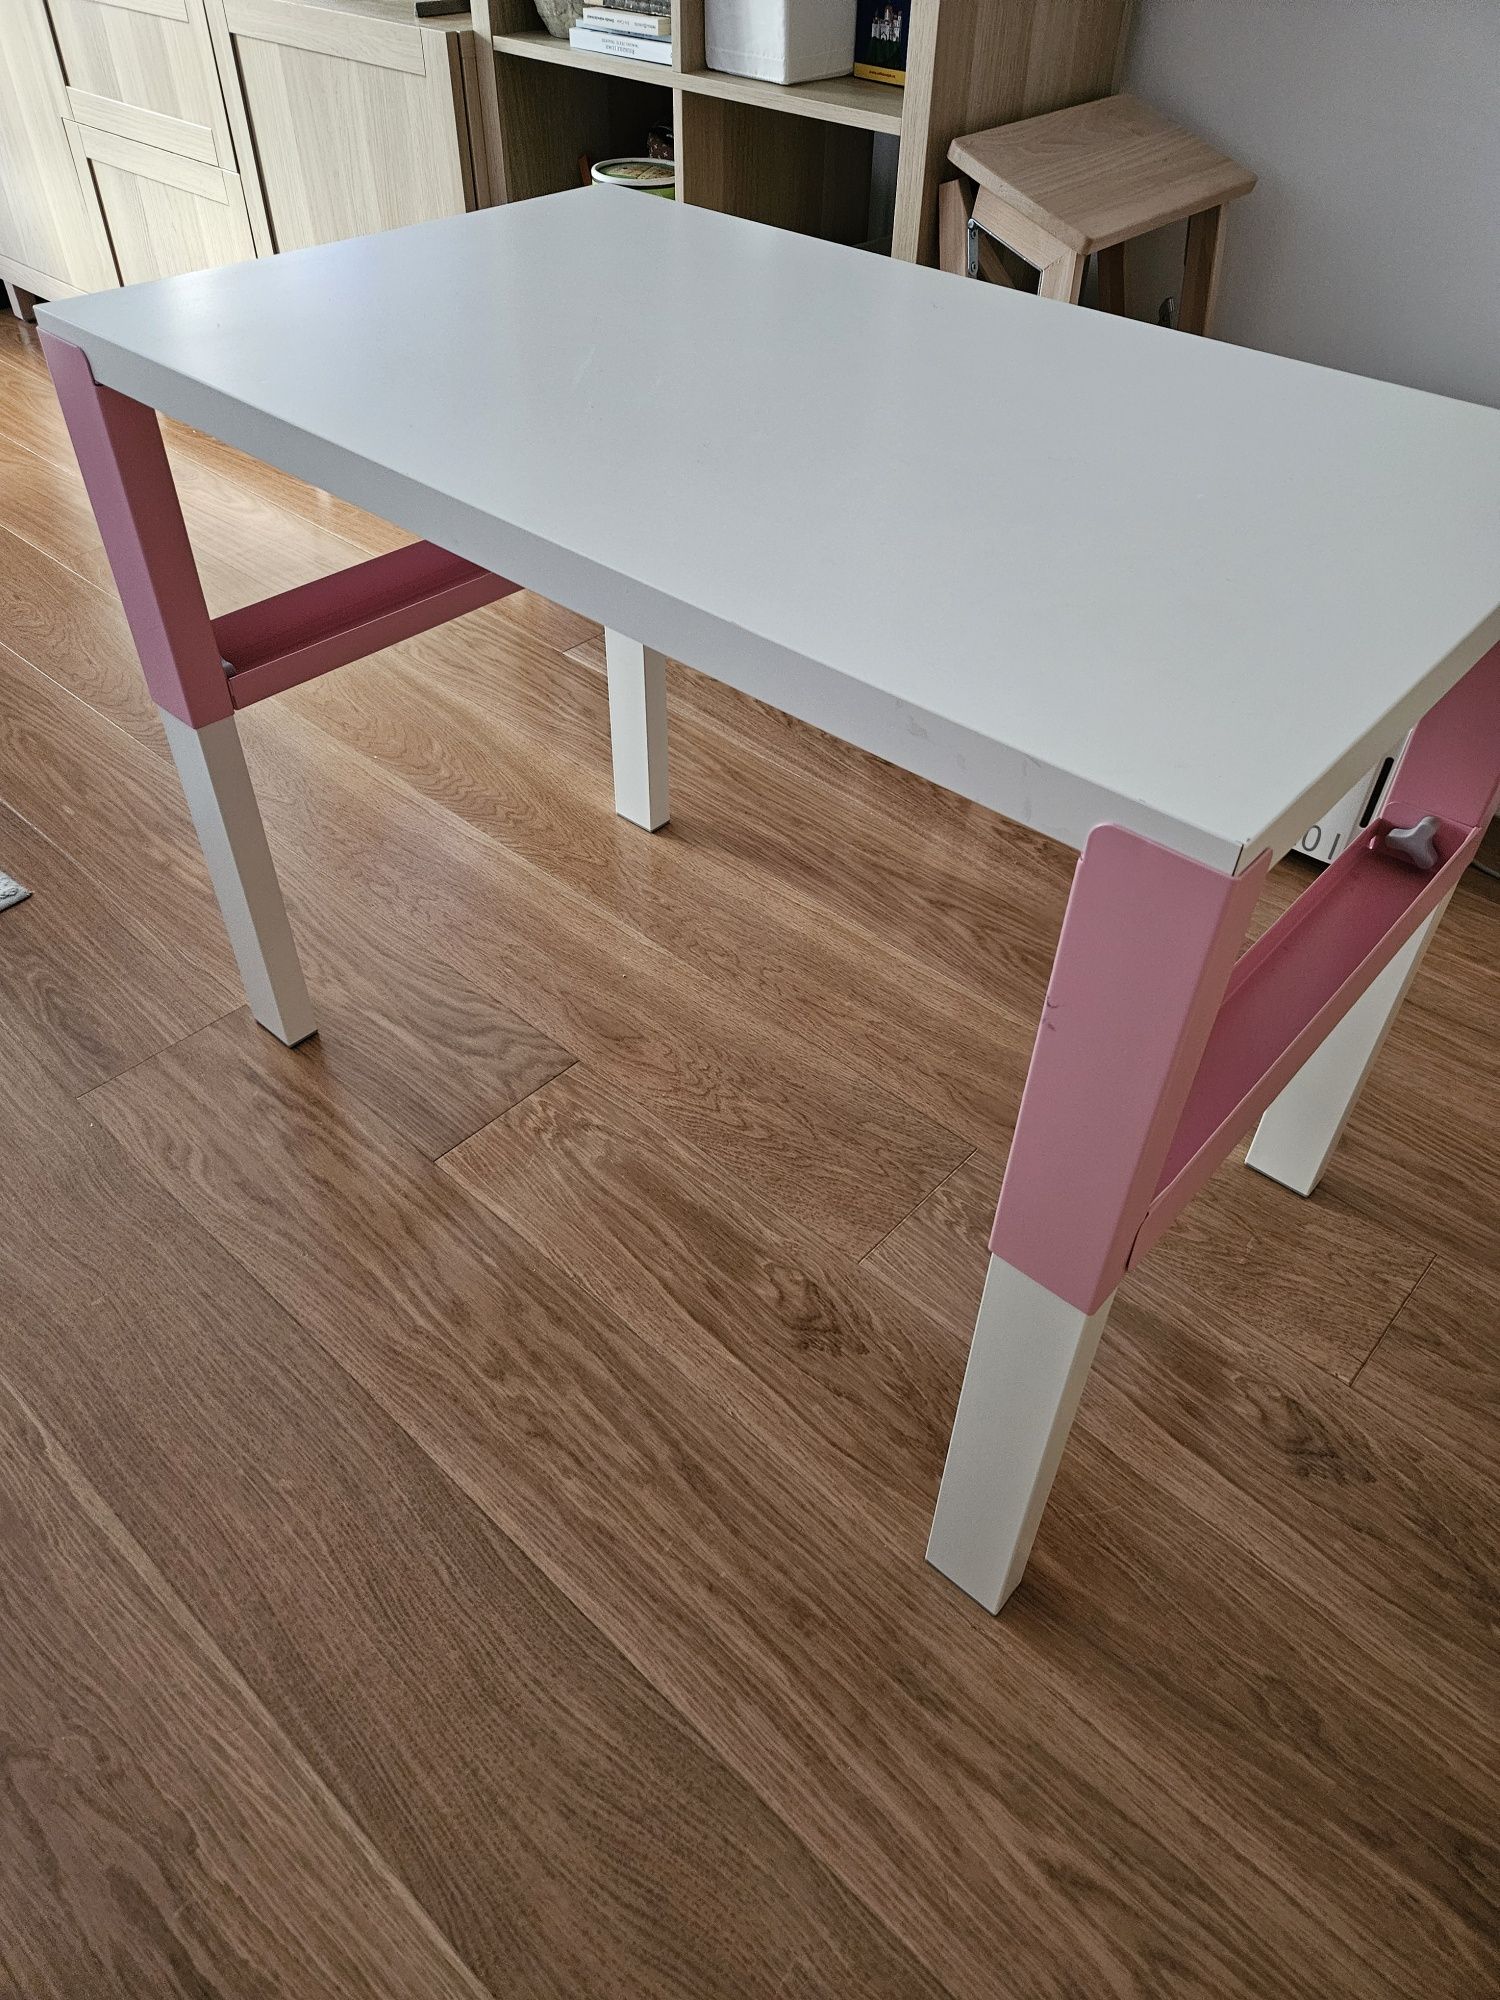 Vand birou alb/roz Pahl - Ikea